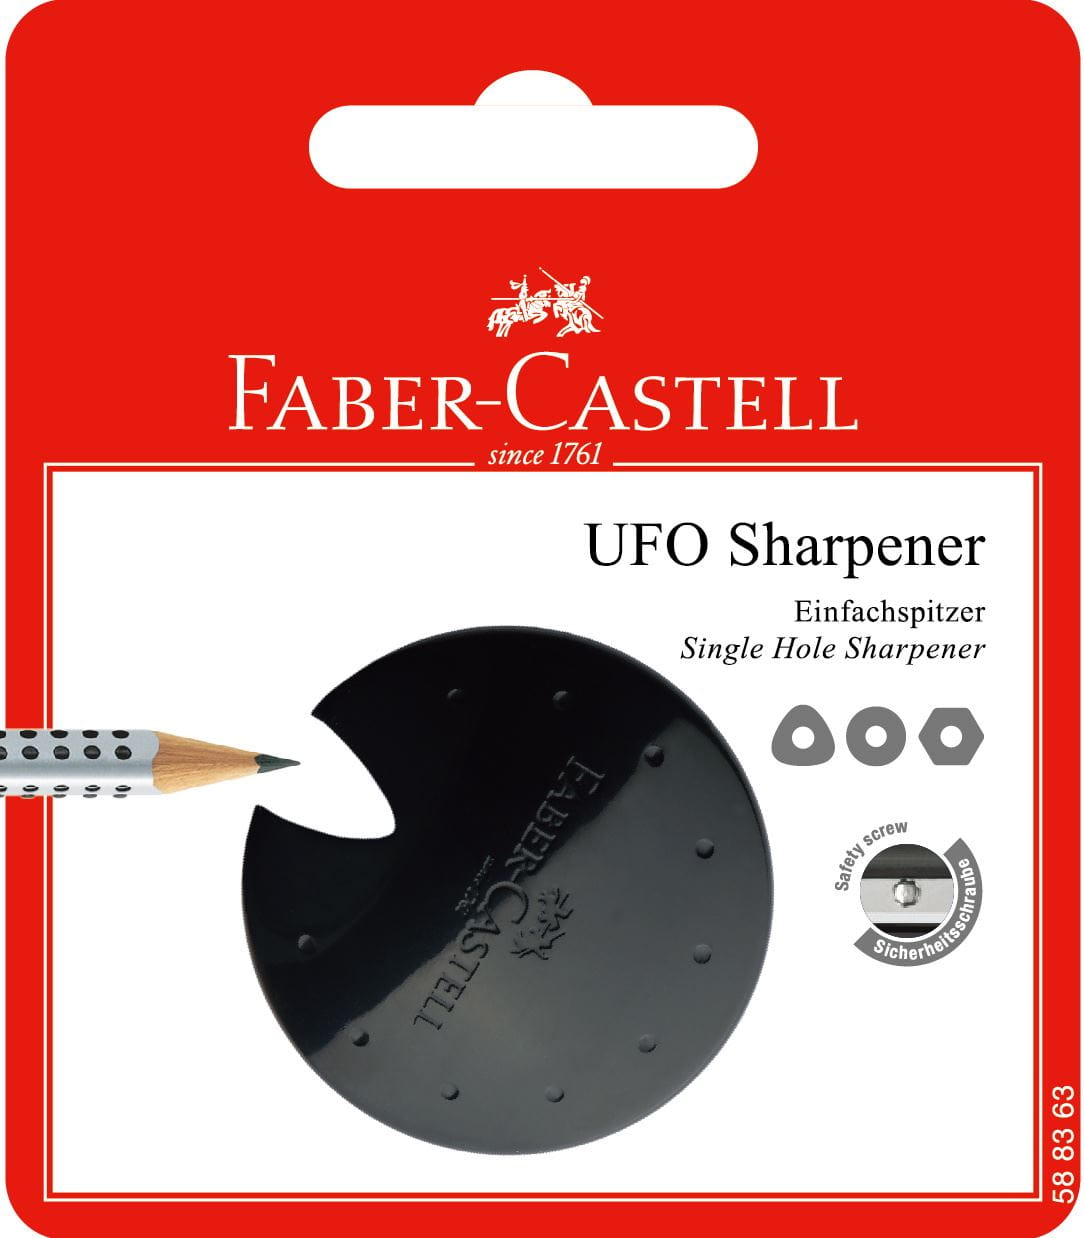 Faber-Castell - Ufo sharpener, red/blue/black, sorted, set of 1